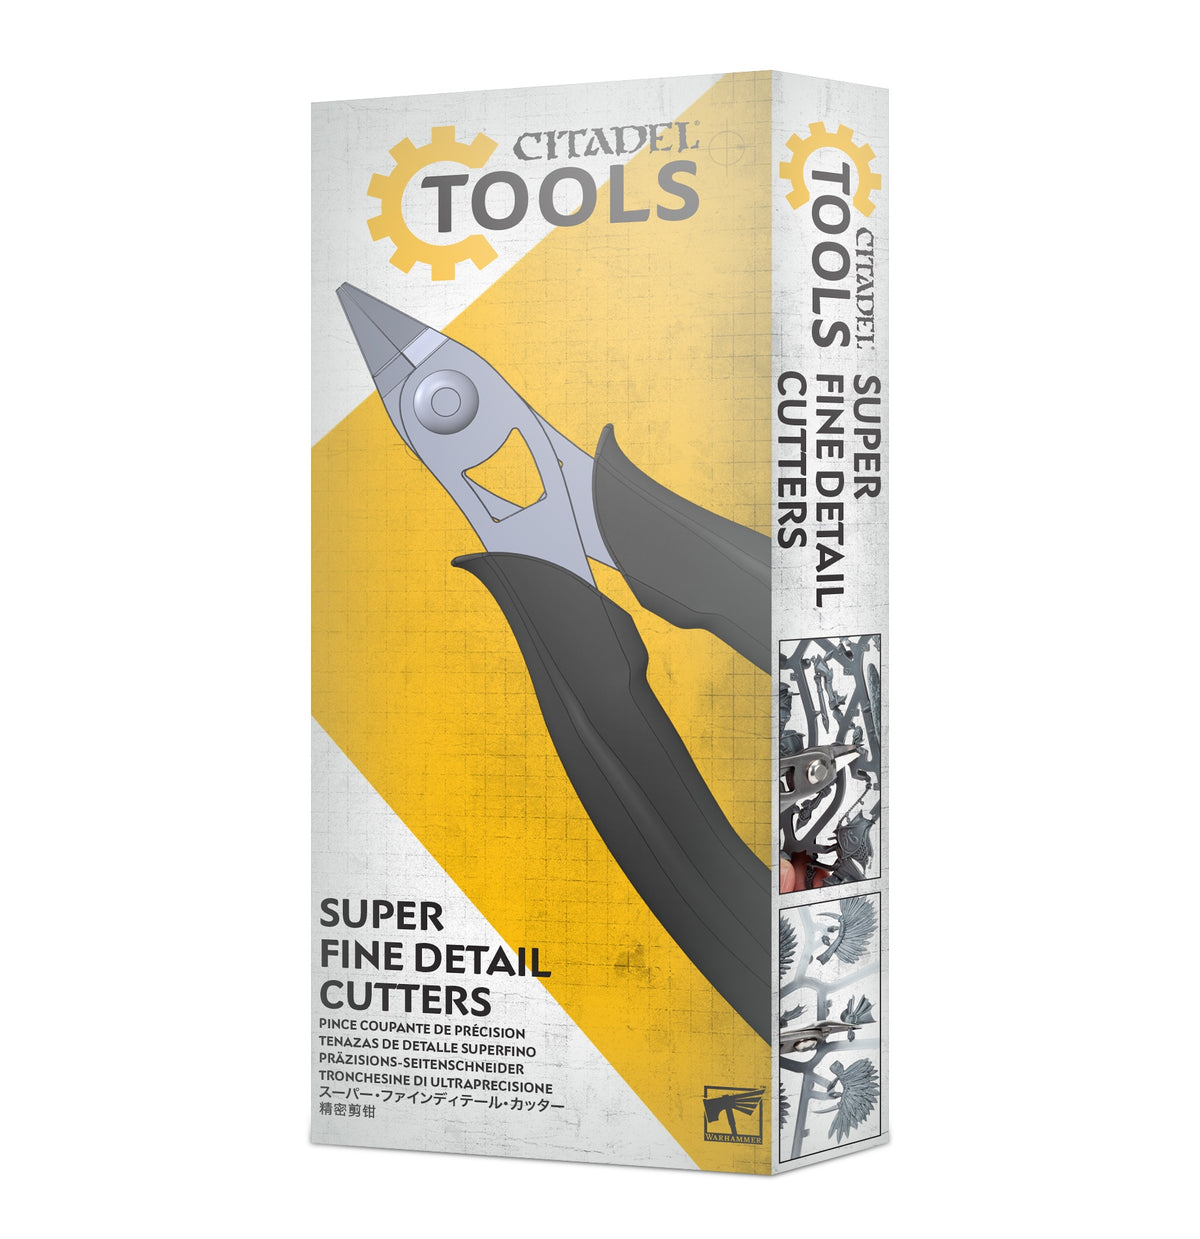 Citadel Tools – Super Fine Detail Cutters (66-63)